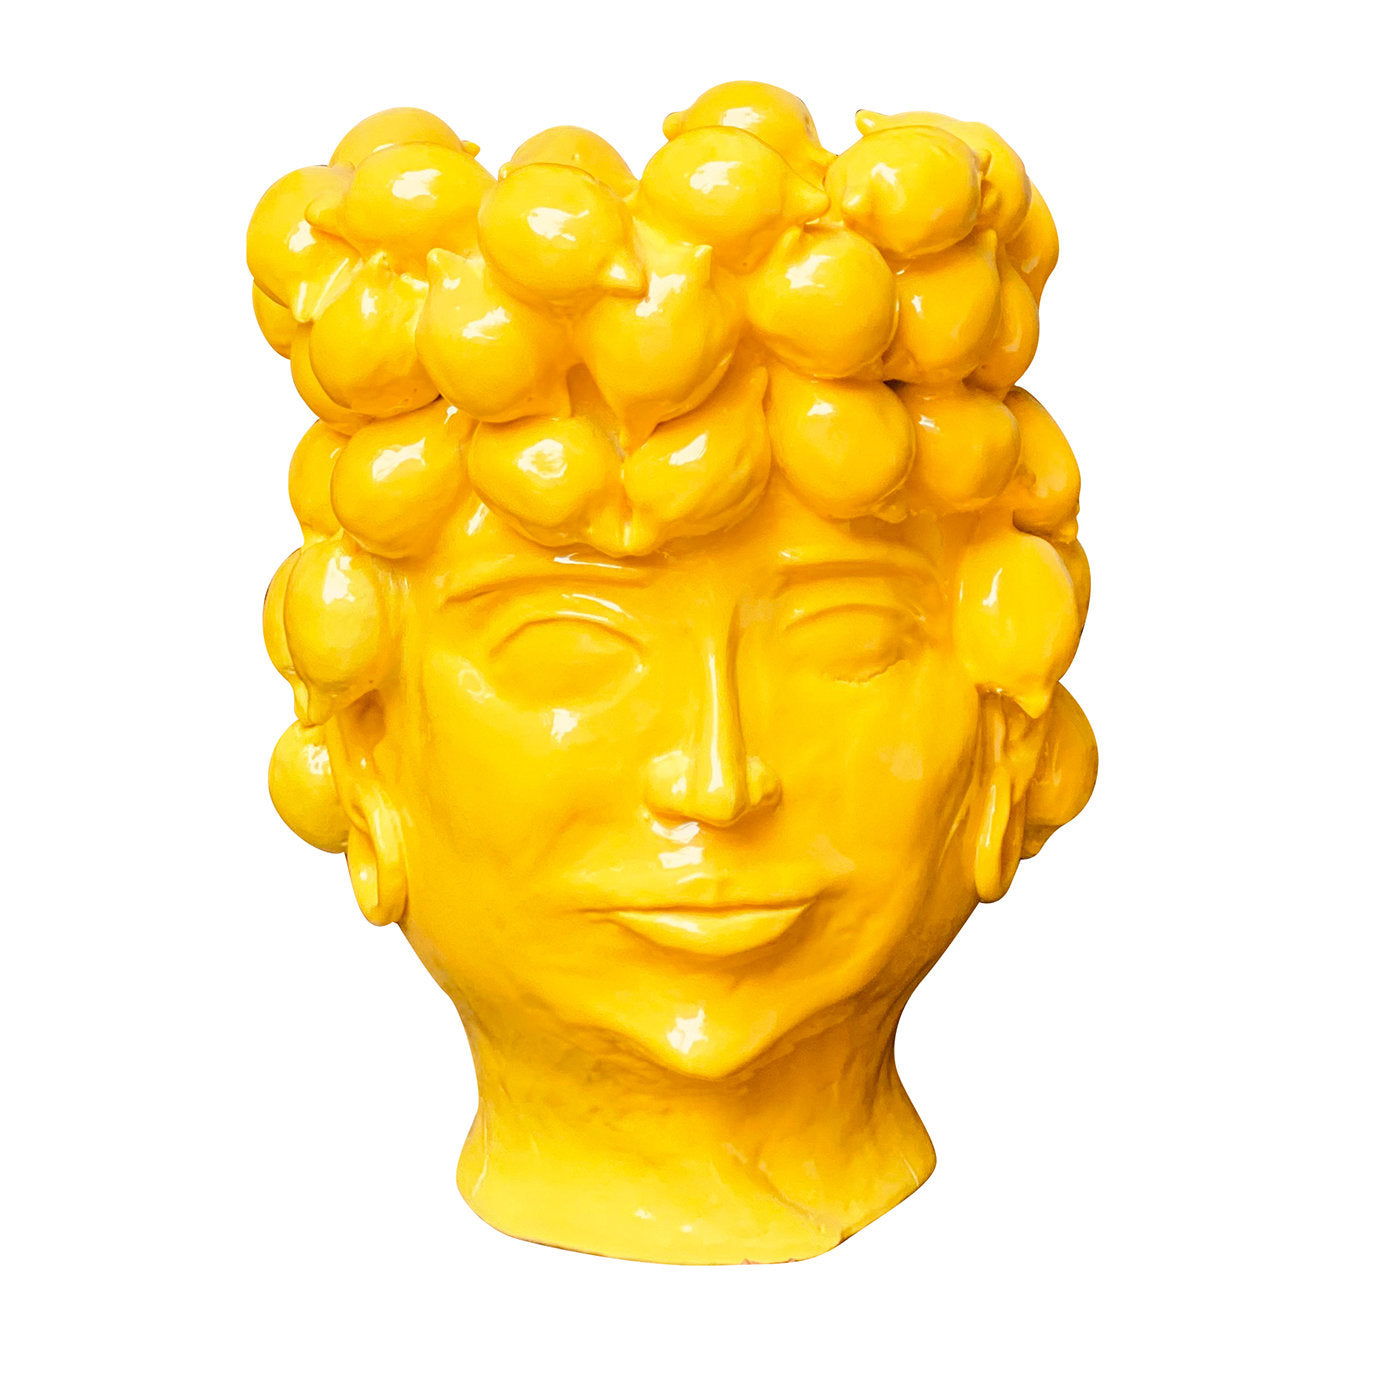 Jarrón con cabeza de reina del país de los limones - Vista principal